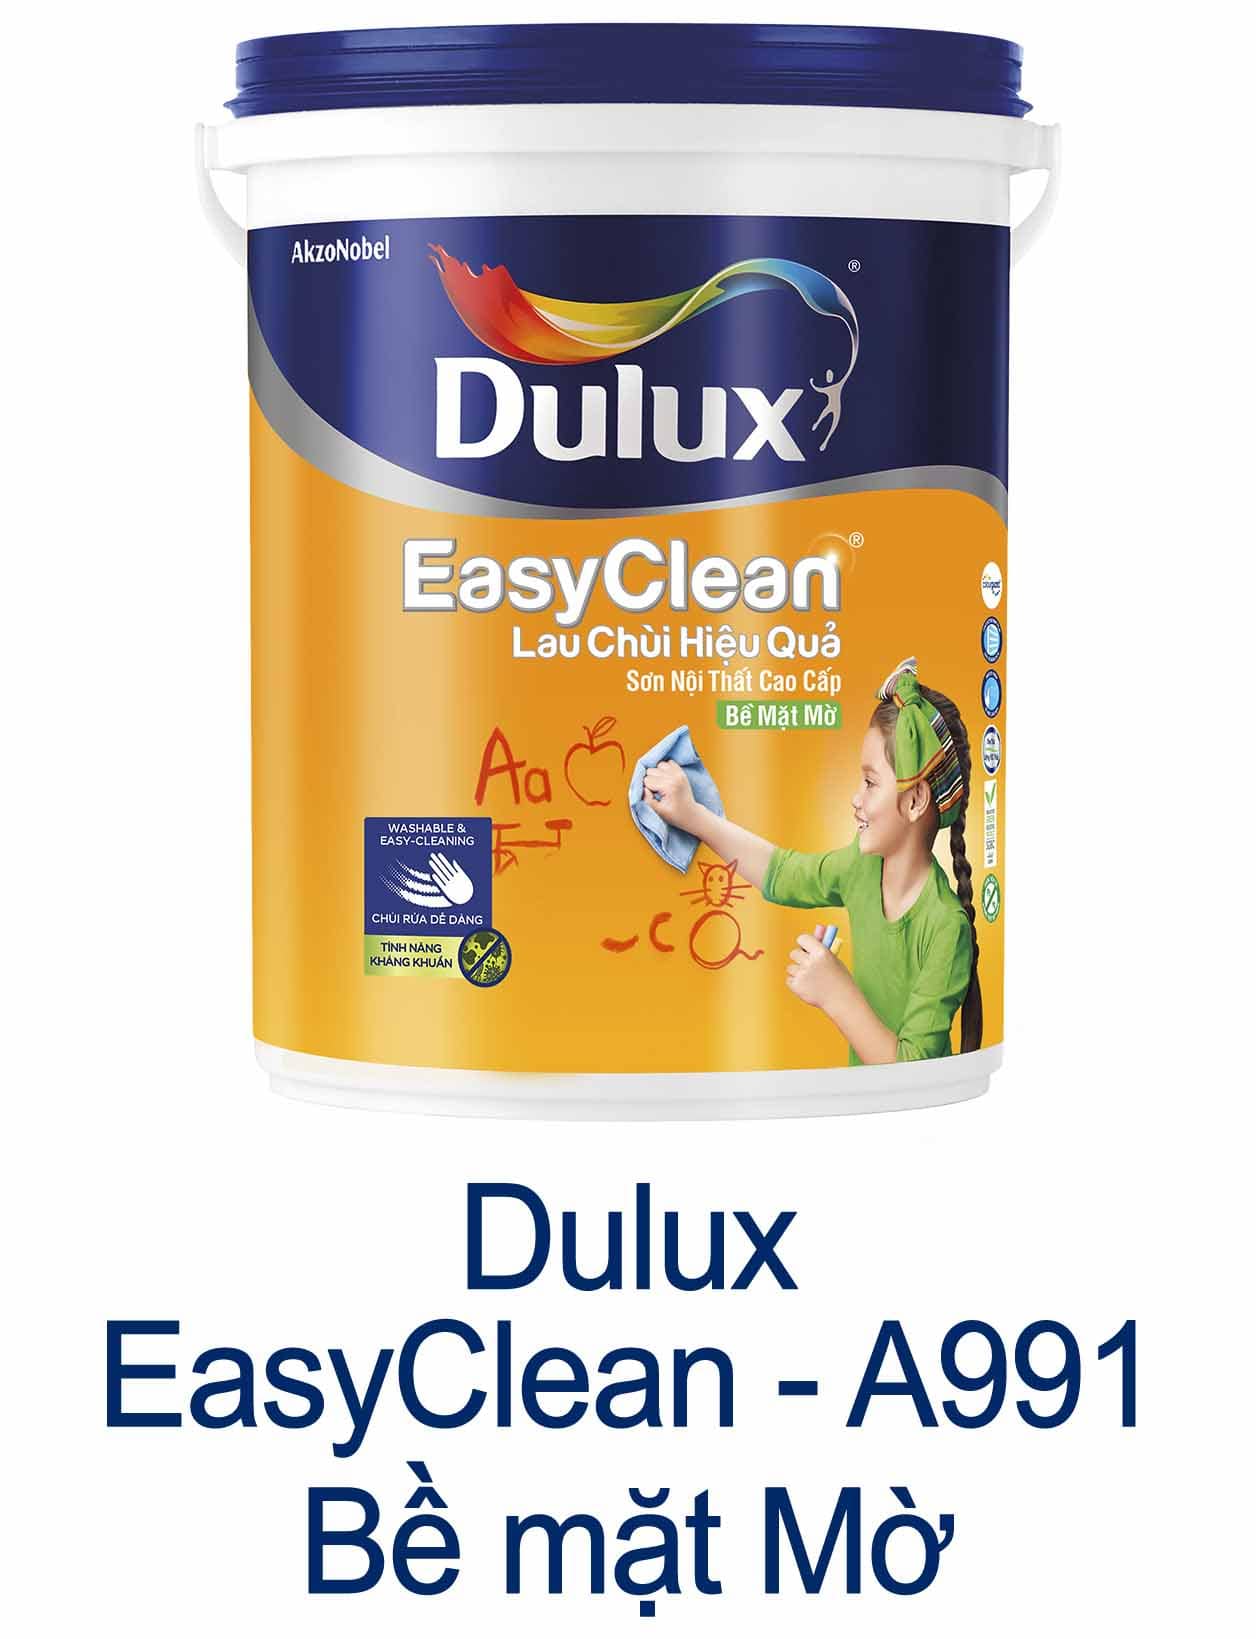 A991 Dulux - Sơn Dulux trong nhà, ngoài trời | Các loại sơn Dulux cao cấp, giá rẻ